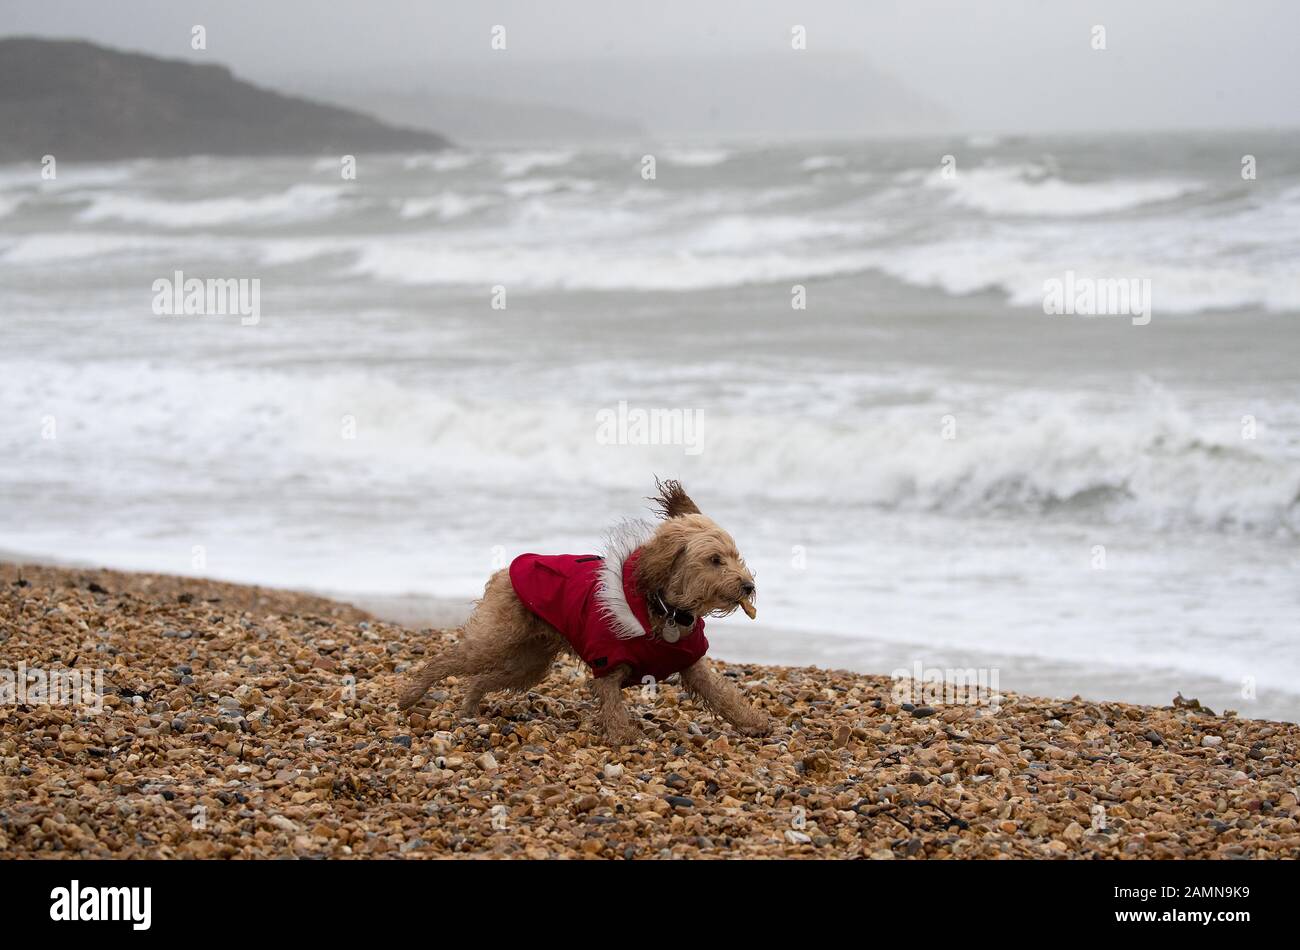 A dog runs along Preston beach near Weymouth in Dorset. Stock Photo